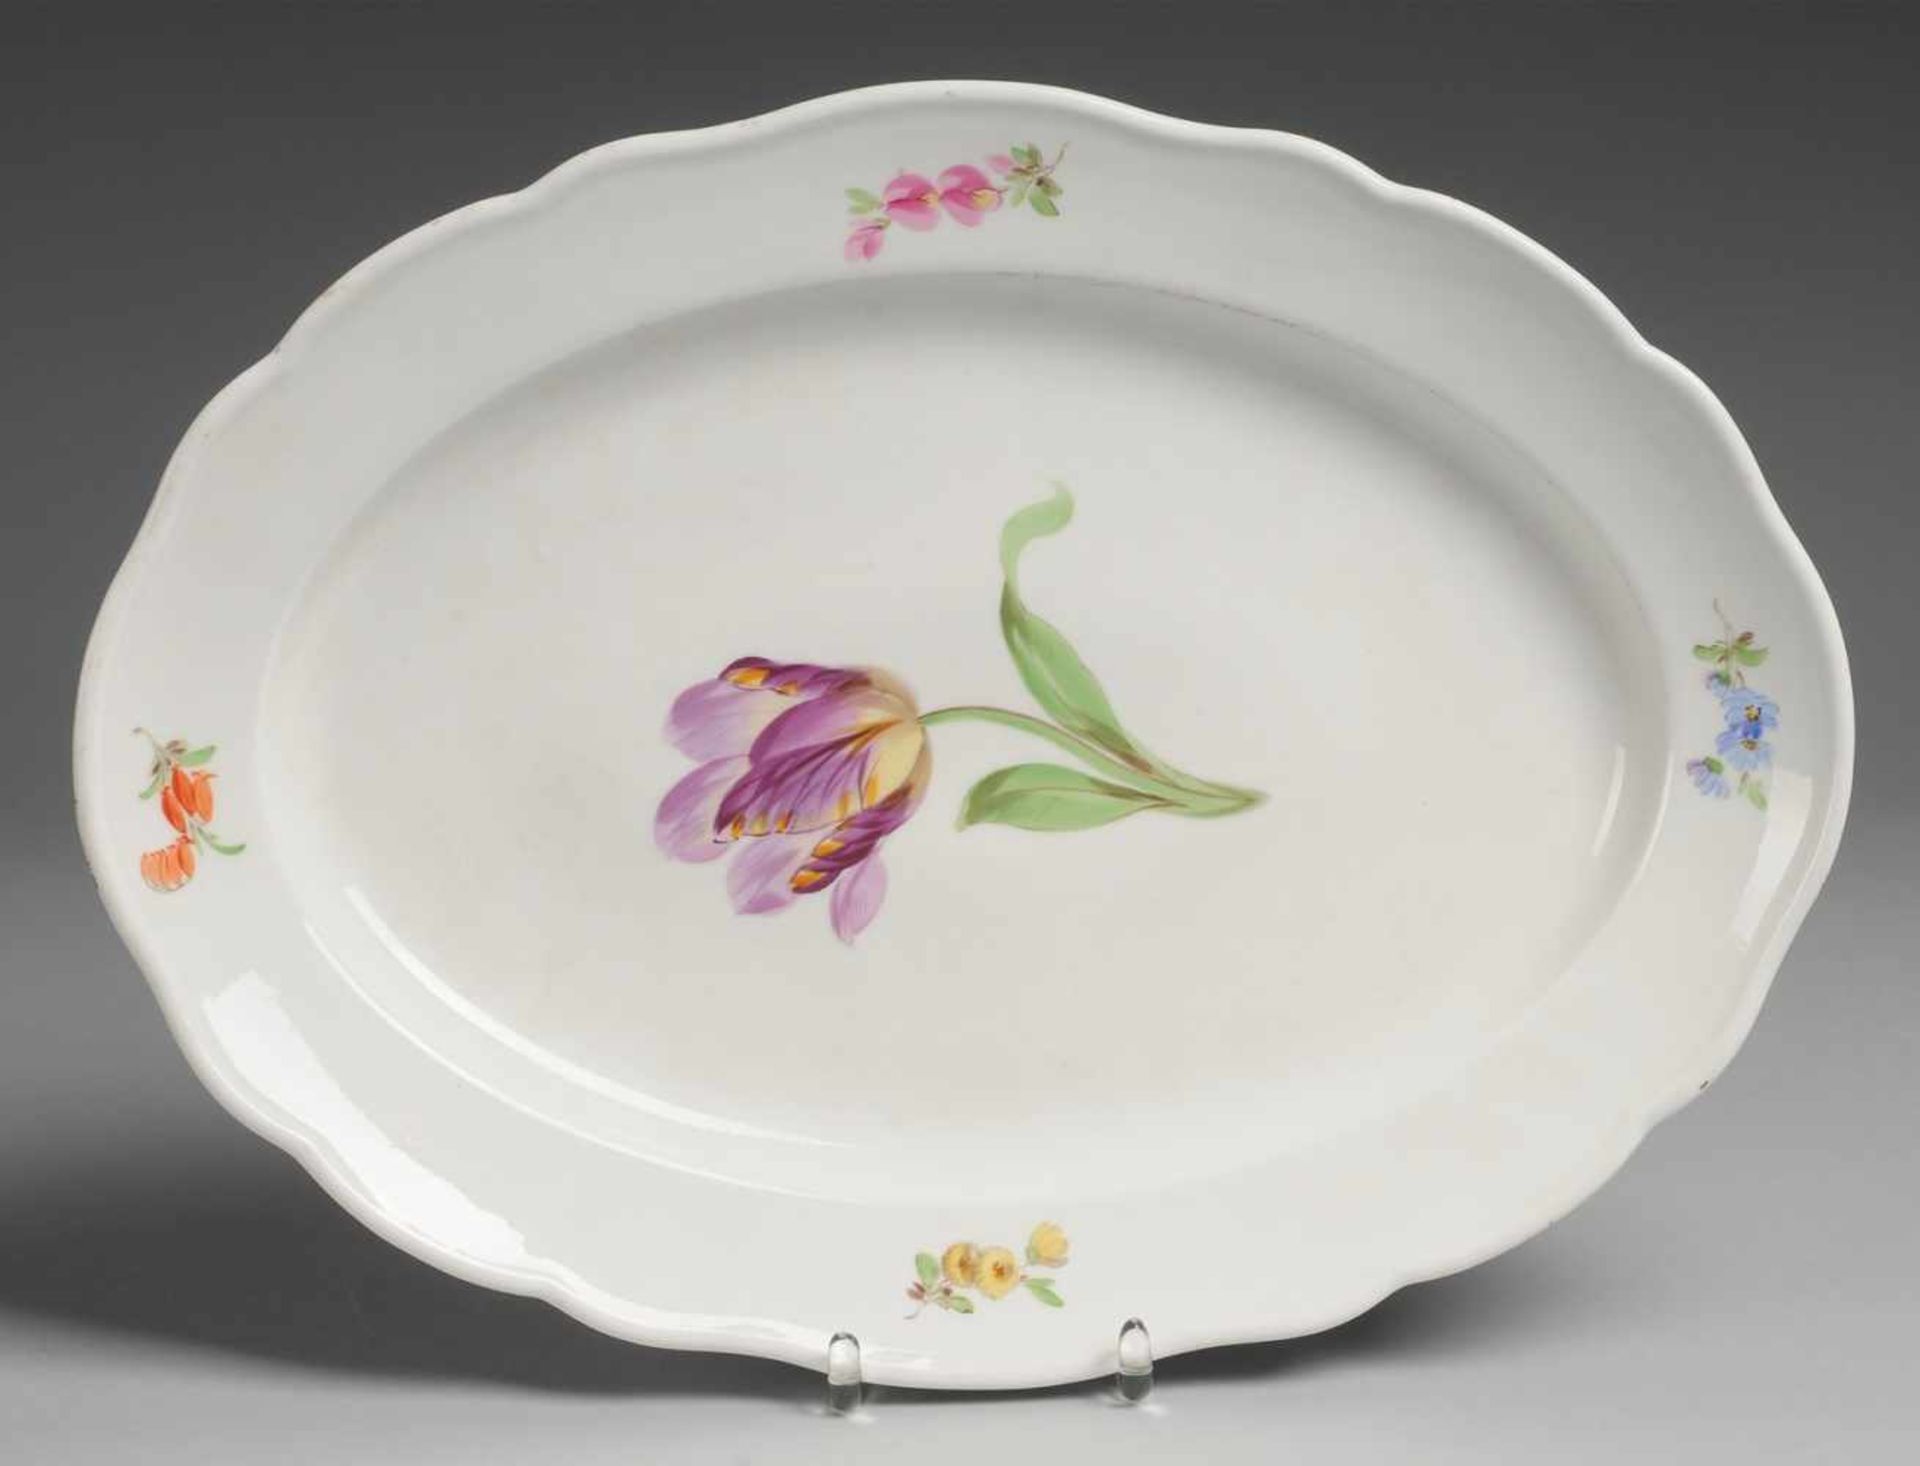 Ovalplatte mit Blumenmalerei Weiß, glasiert. Gebogter Rand. Polychrome Bemalung mit Tulpenblüte